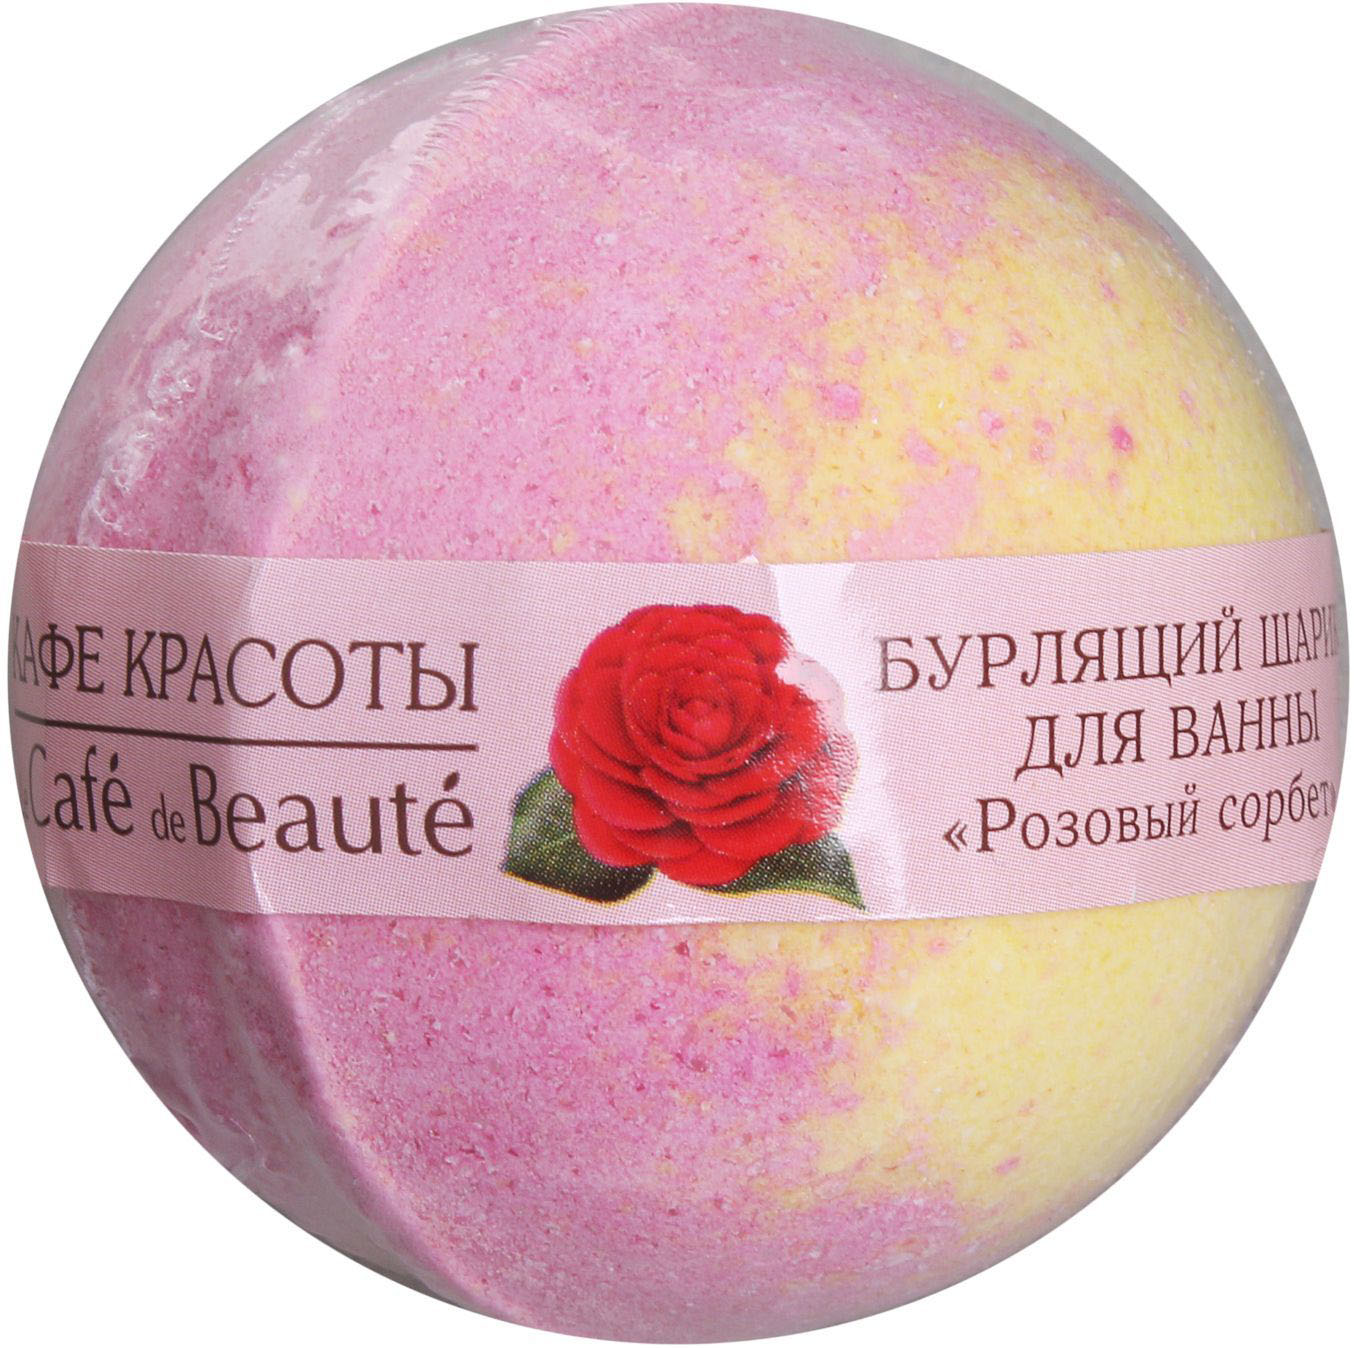 фото Шар для ванны кафе красоты розовый сорбет 120 г